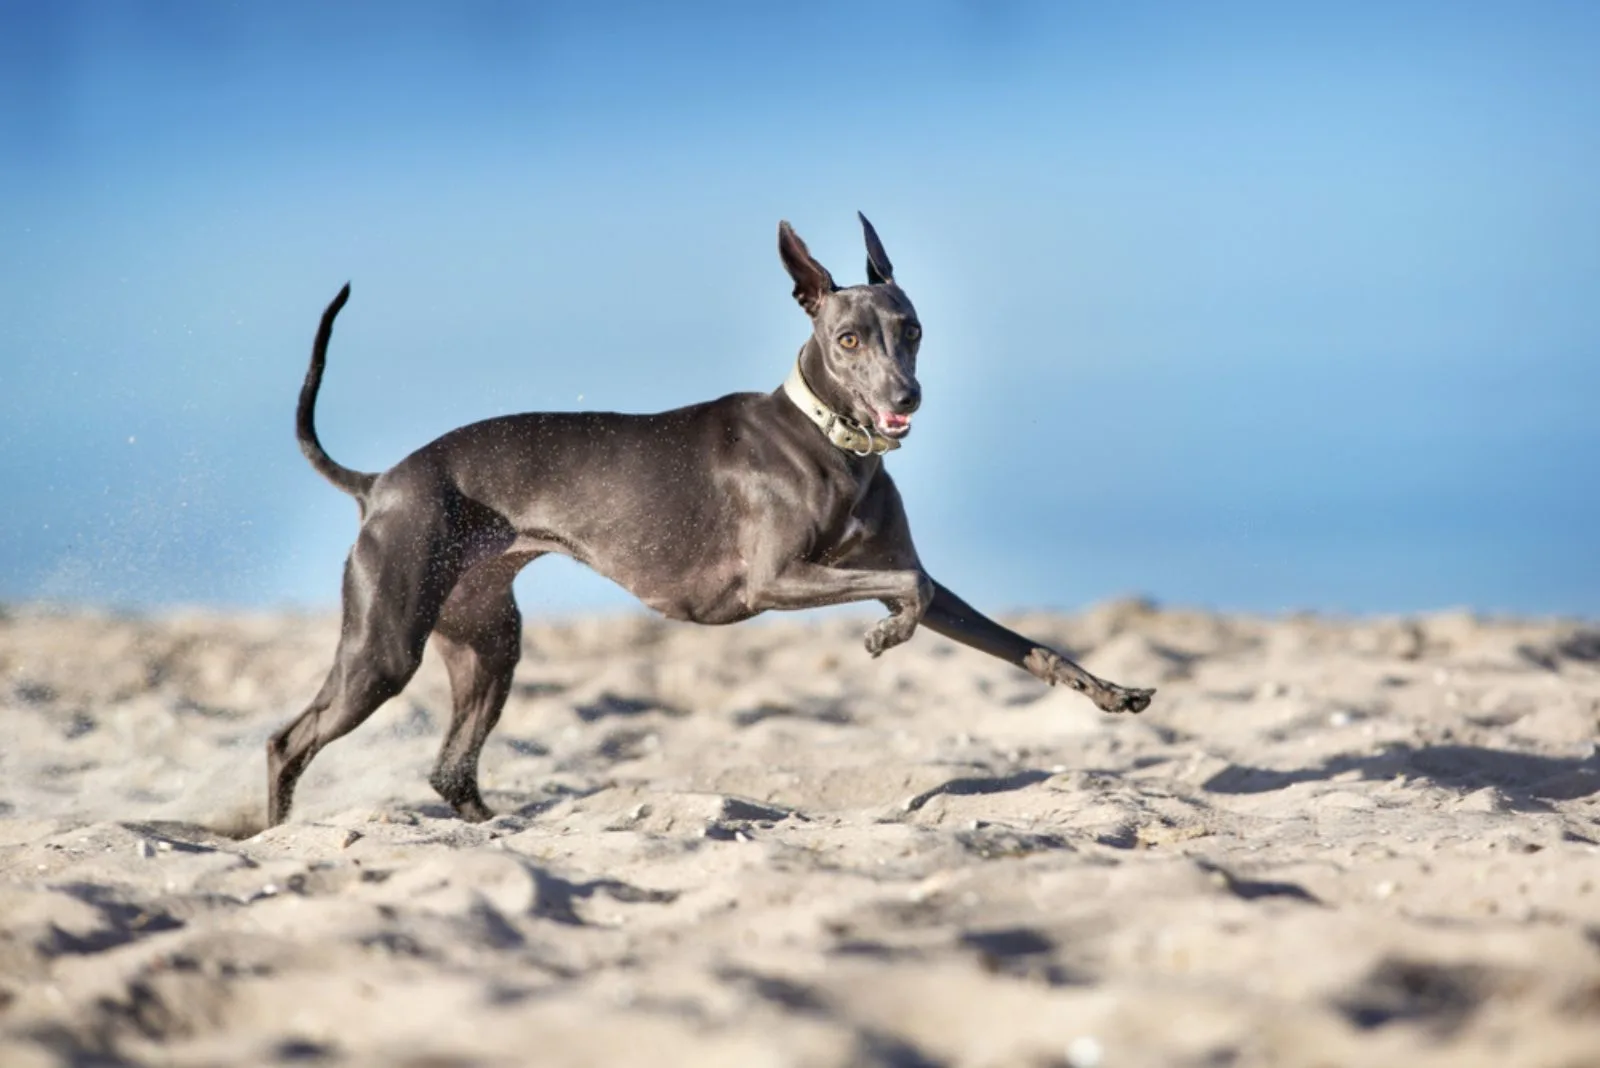 Italian greuhound run on river shore on sand